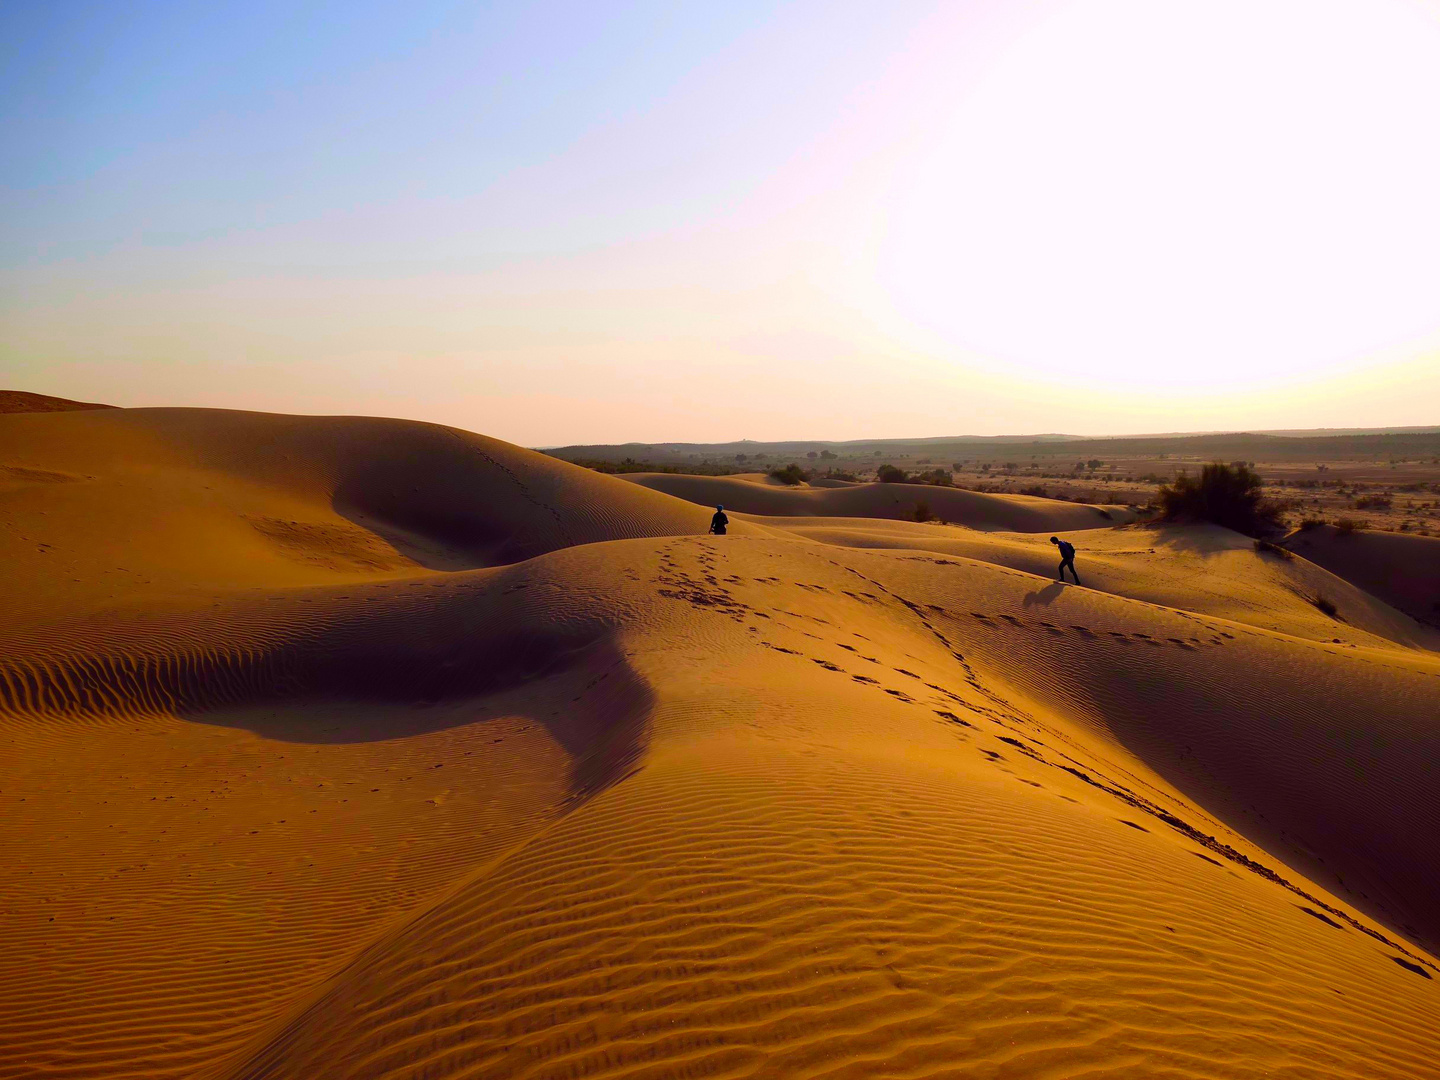 Thar Desert, India 